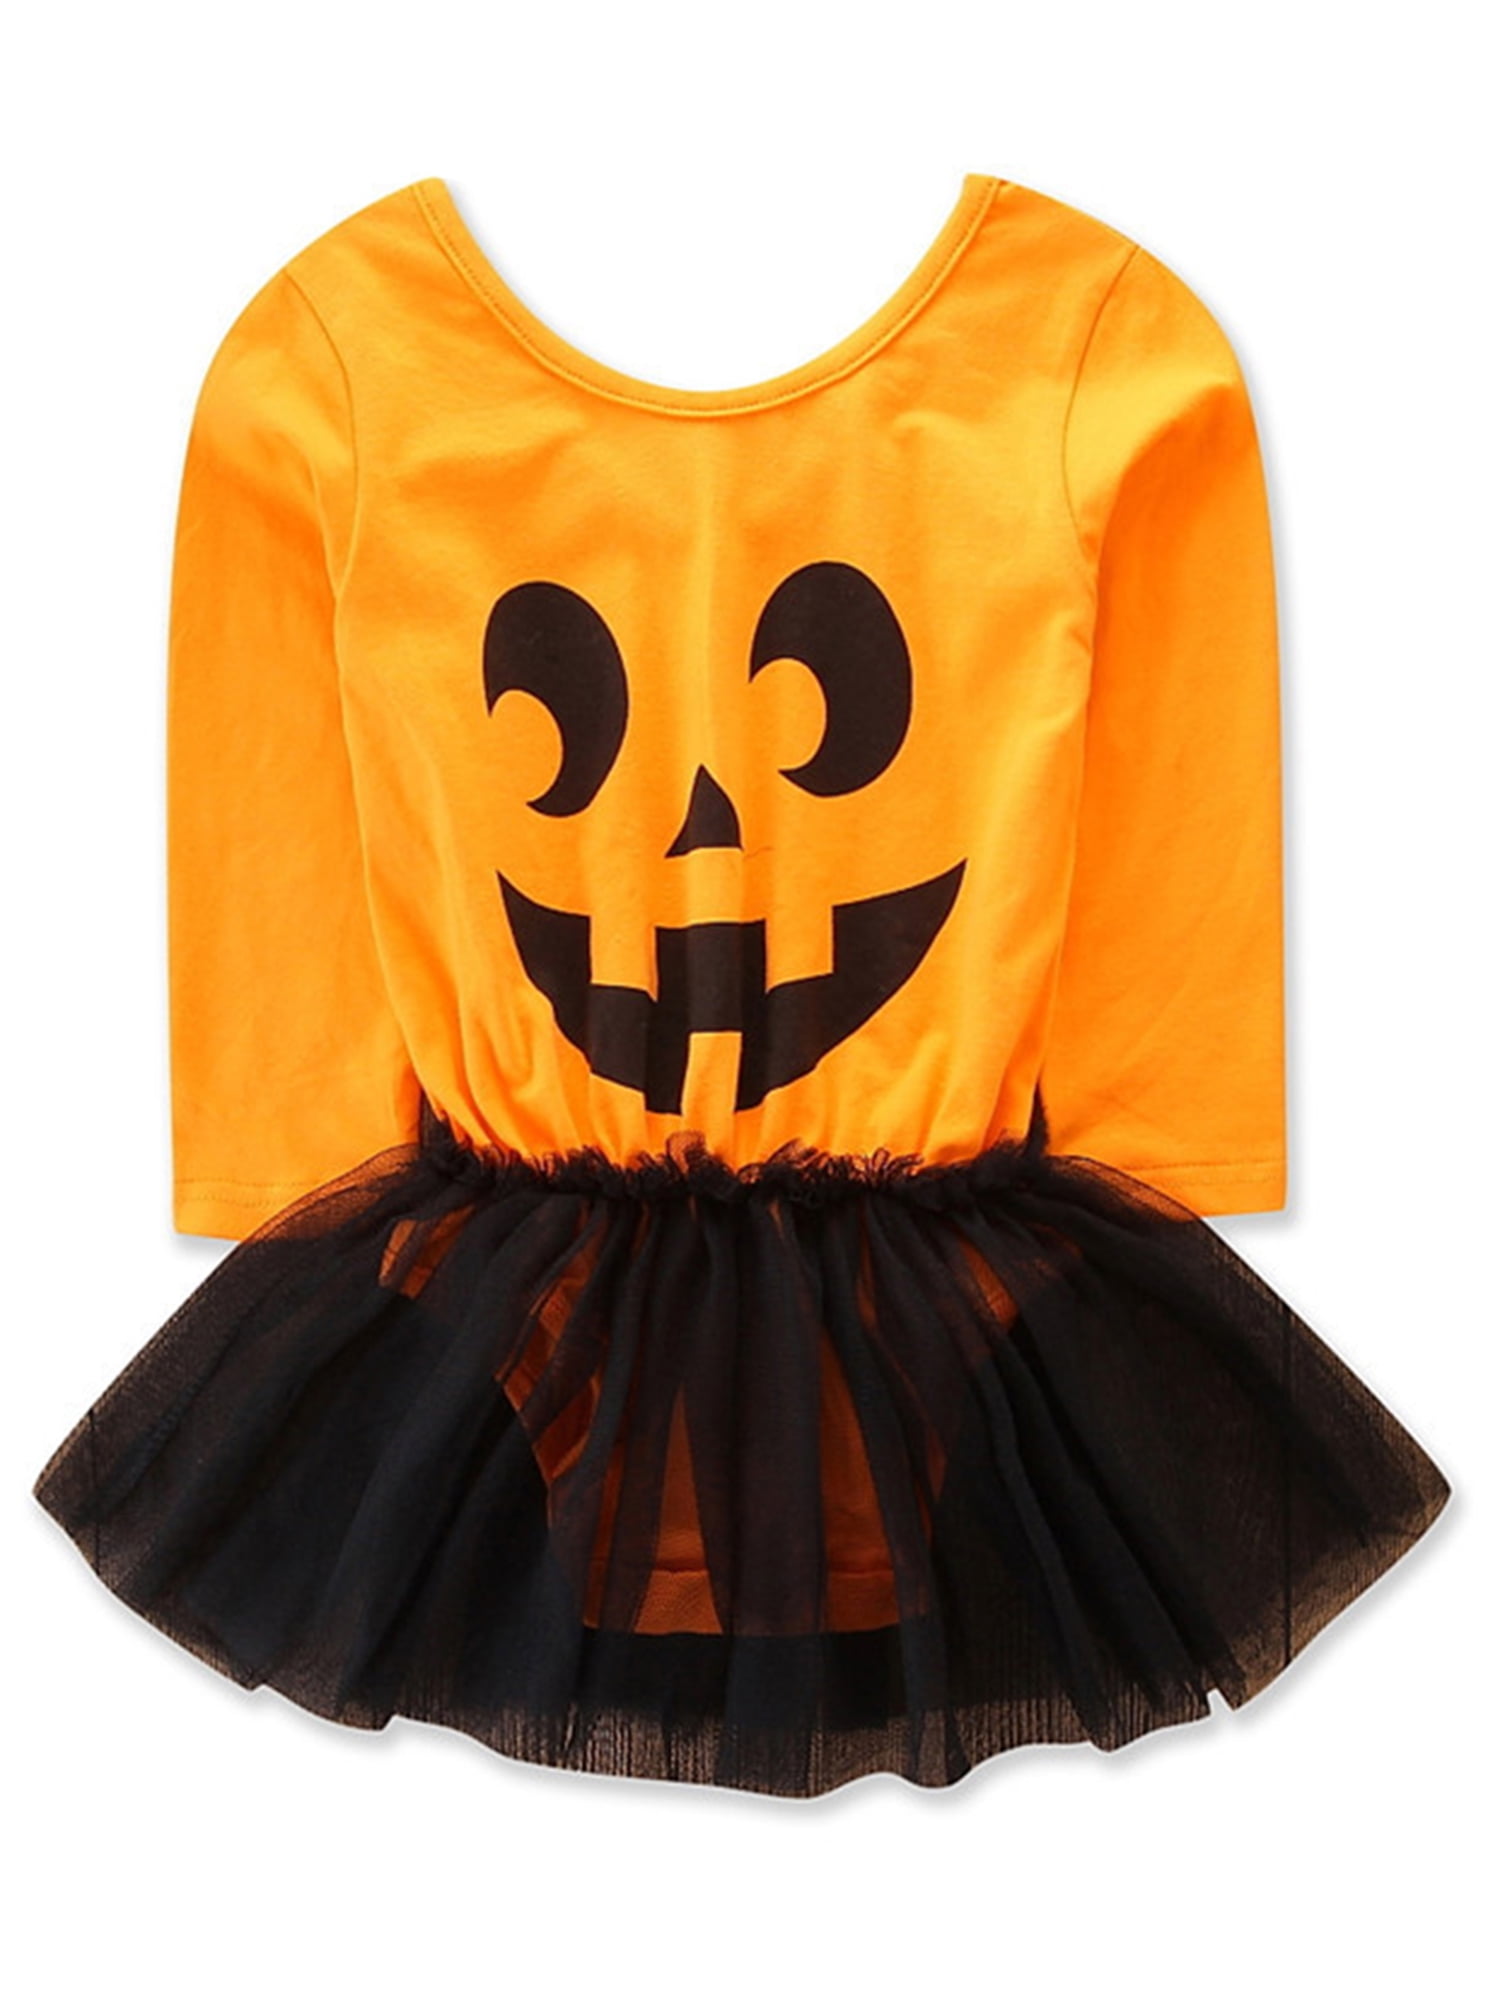 Beginner High exposure Suri Infant Baby Girls Pumpkin Face Cotton Long Sleeve Romper with Tutu Skirt  Halloween Costume (90/12-18 Months) - Walmart.com